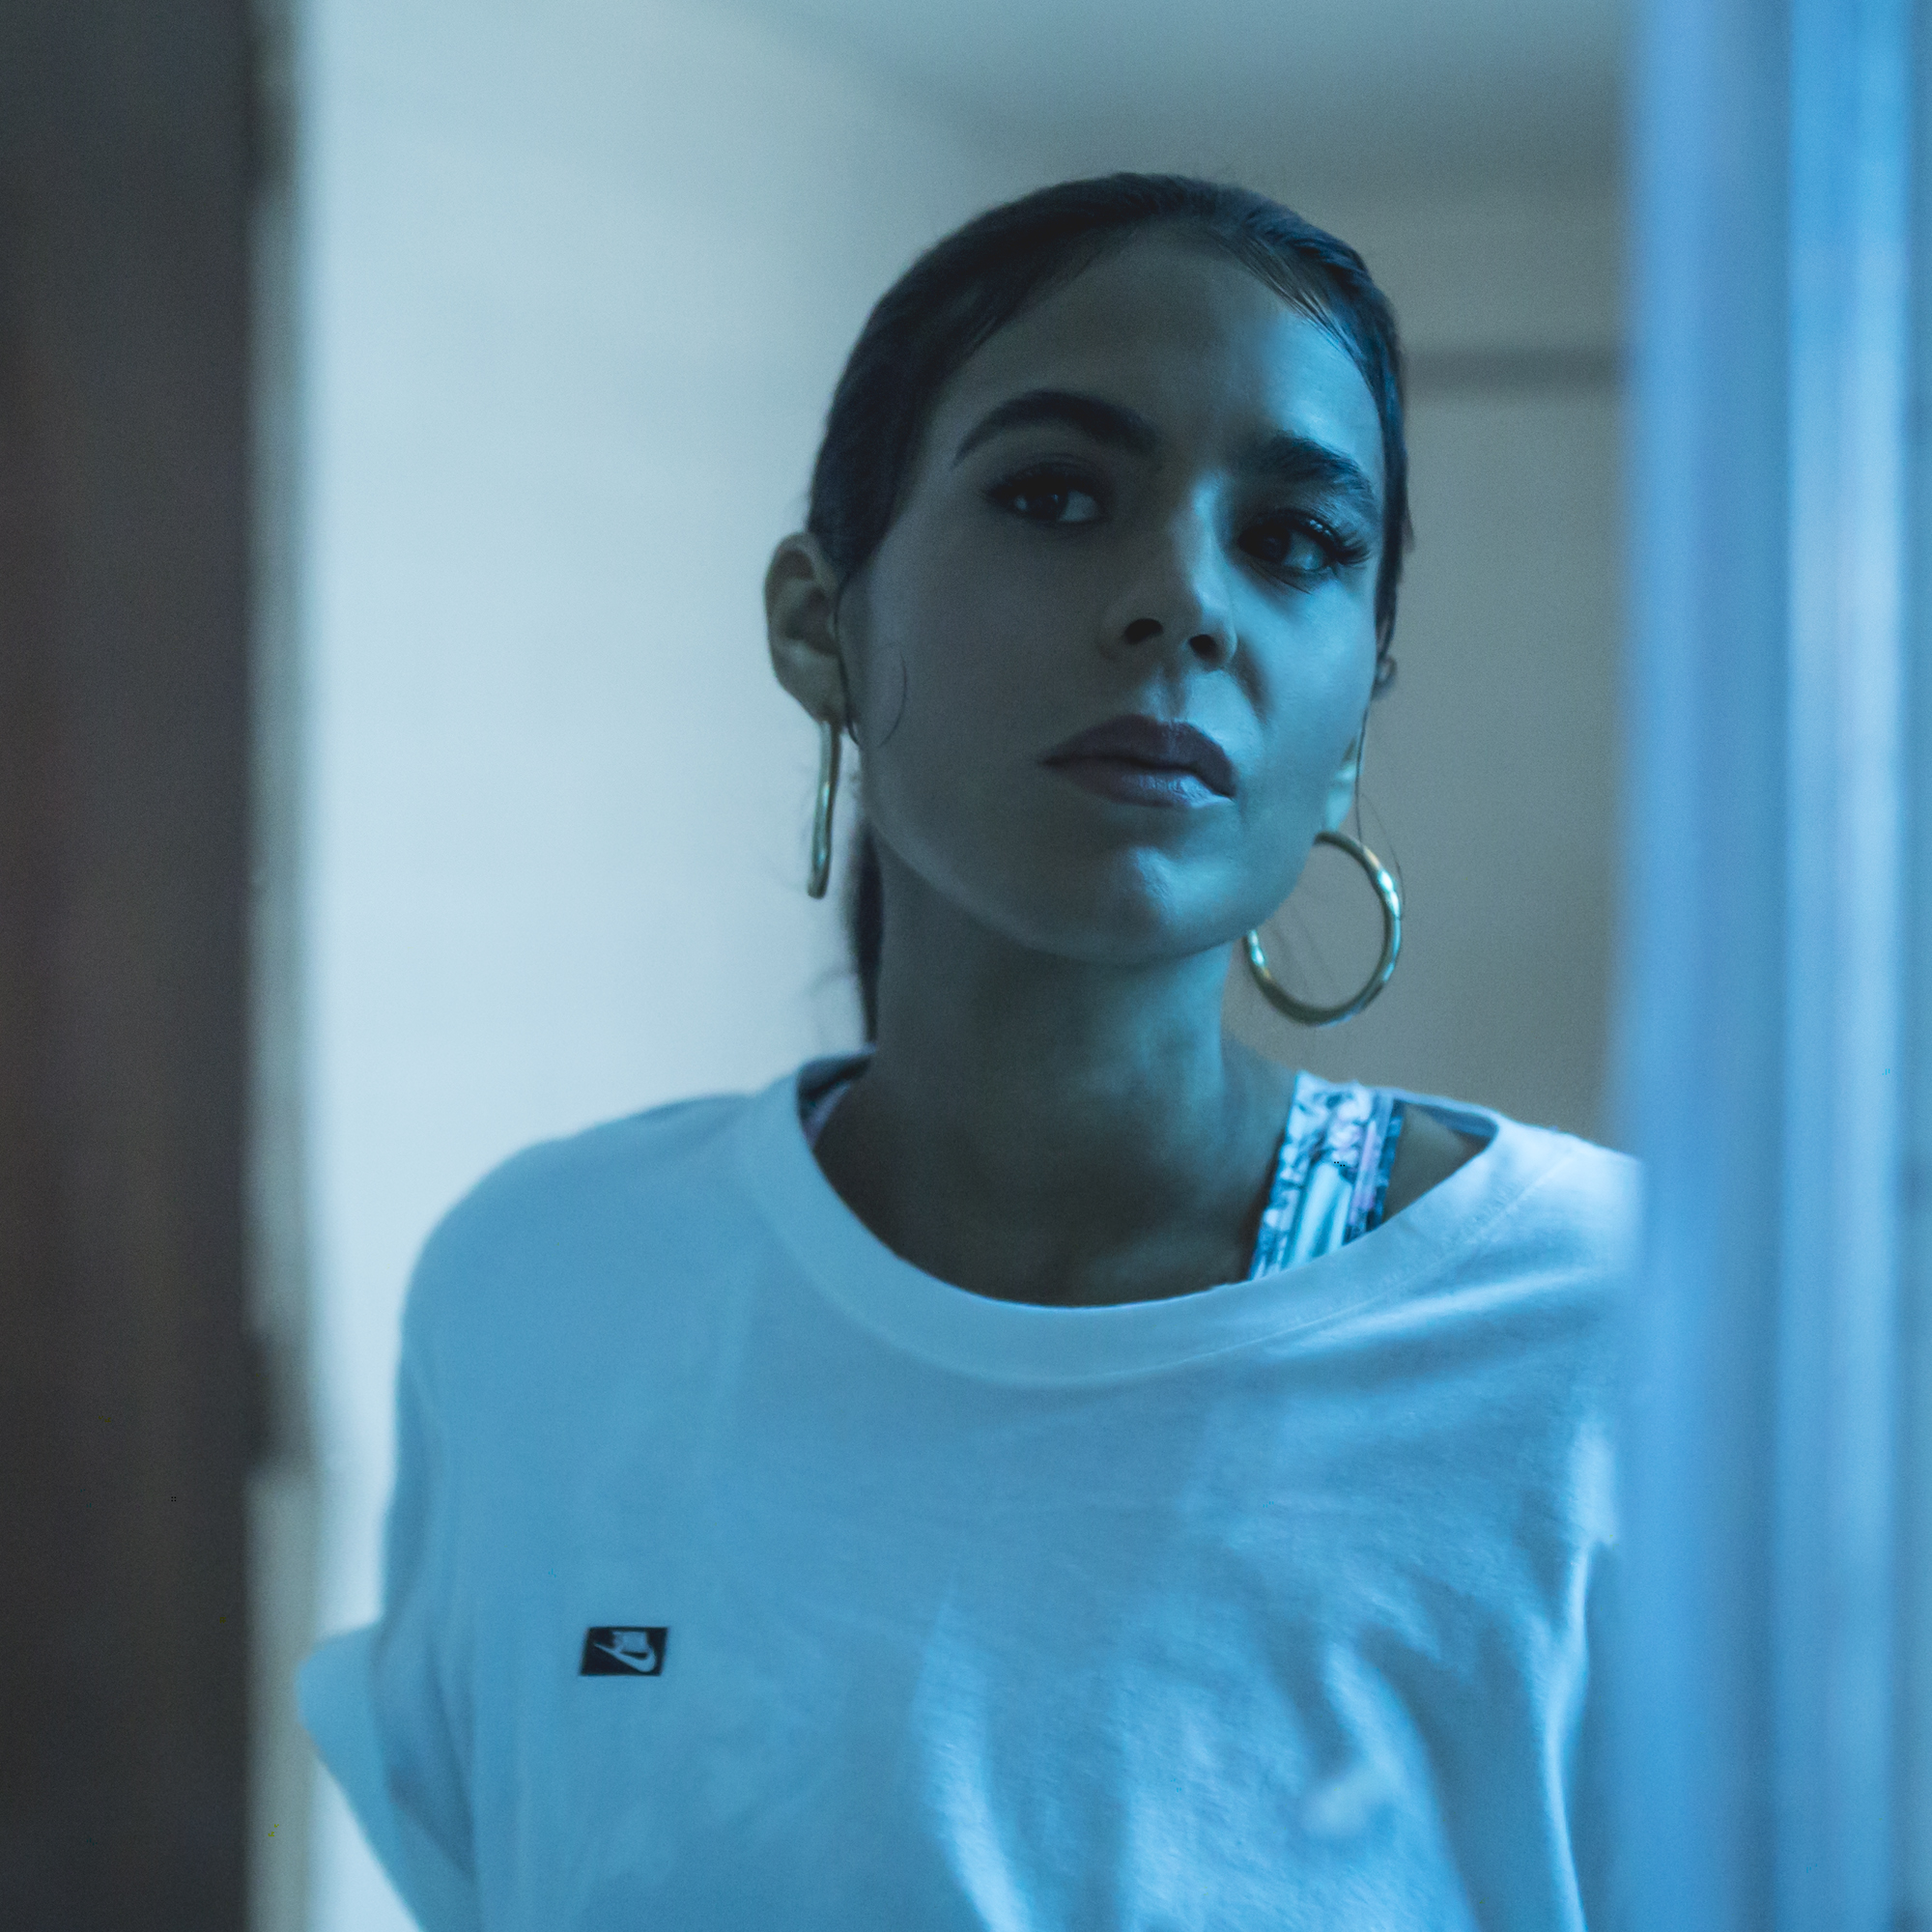 Escucha "Encuentro", la sensual y adictiva canción de Immasoul que escucharás en Vaivén 2019